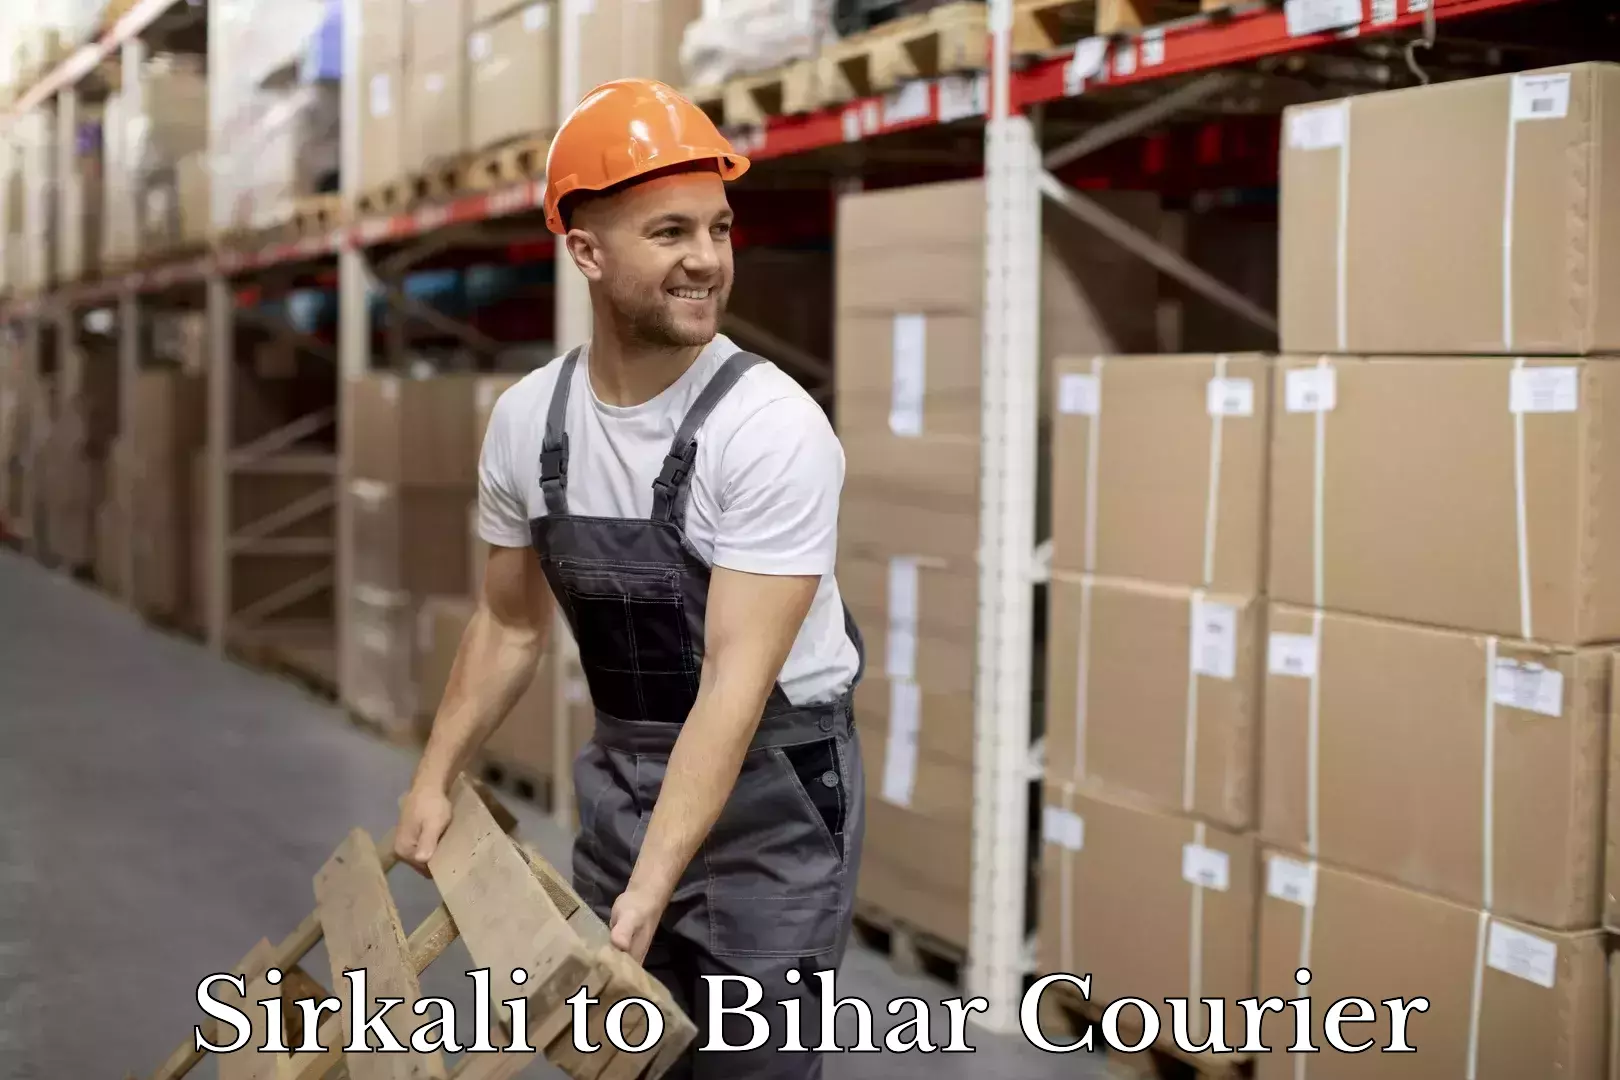 Doorstep delivery service Sirkali to Bihar